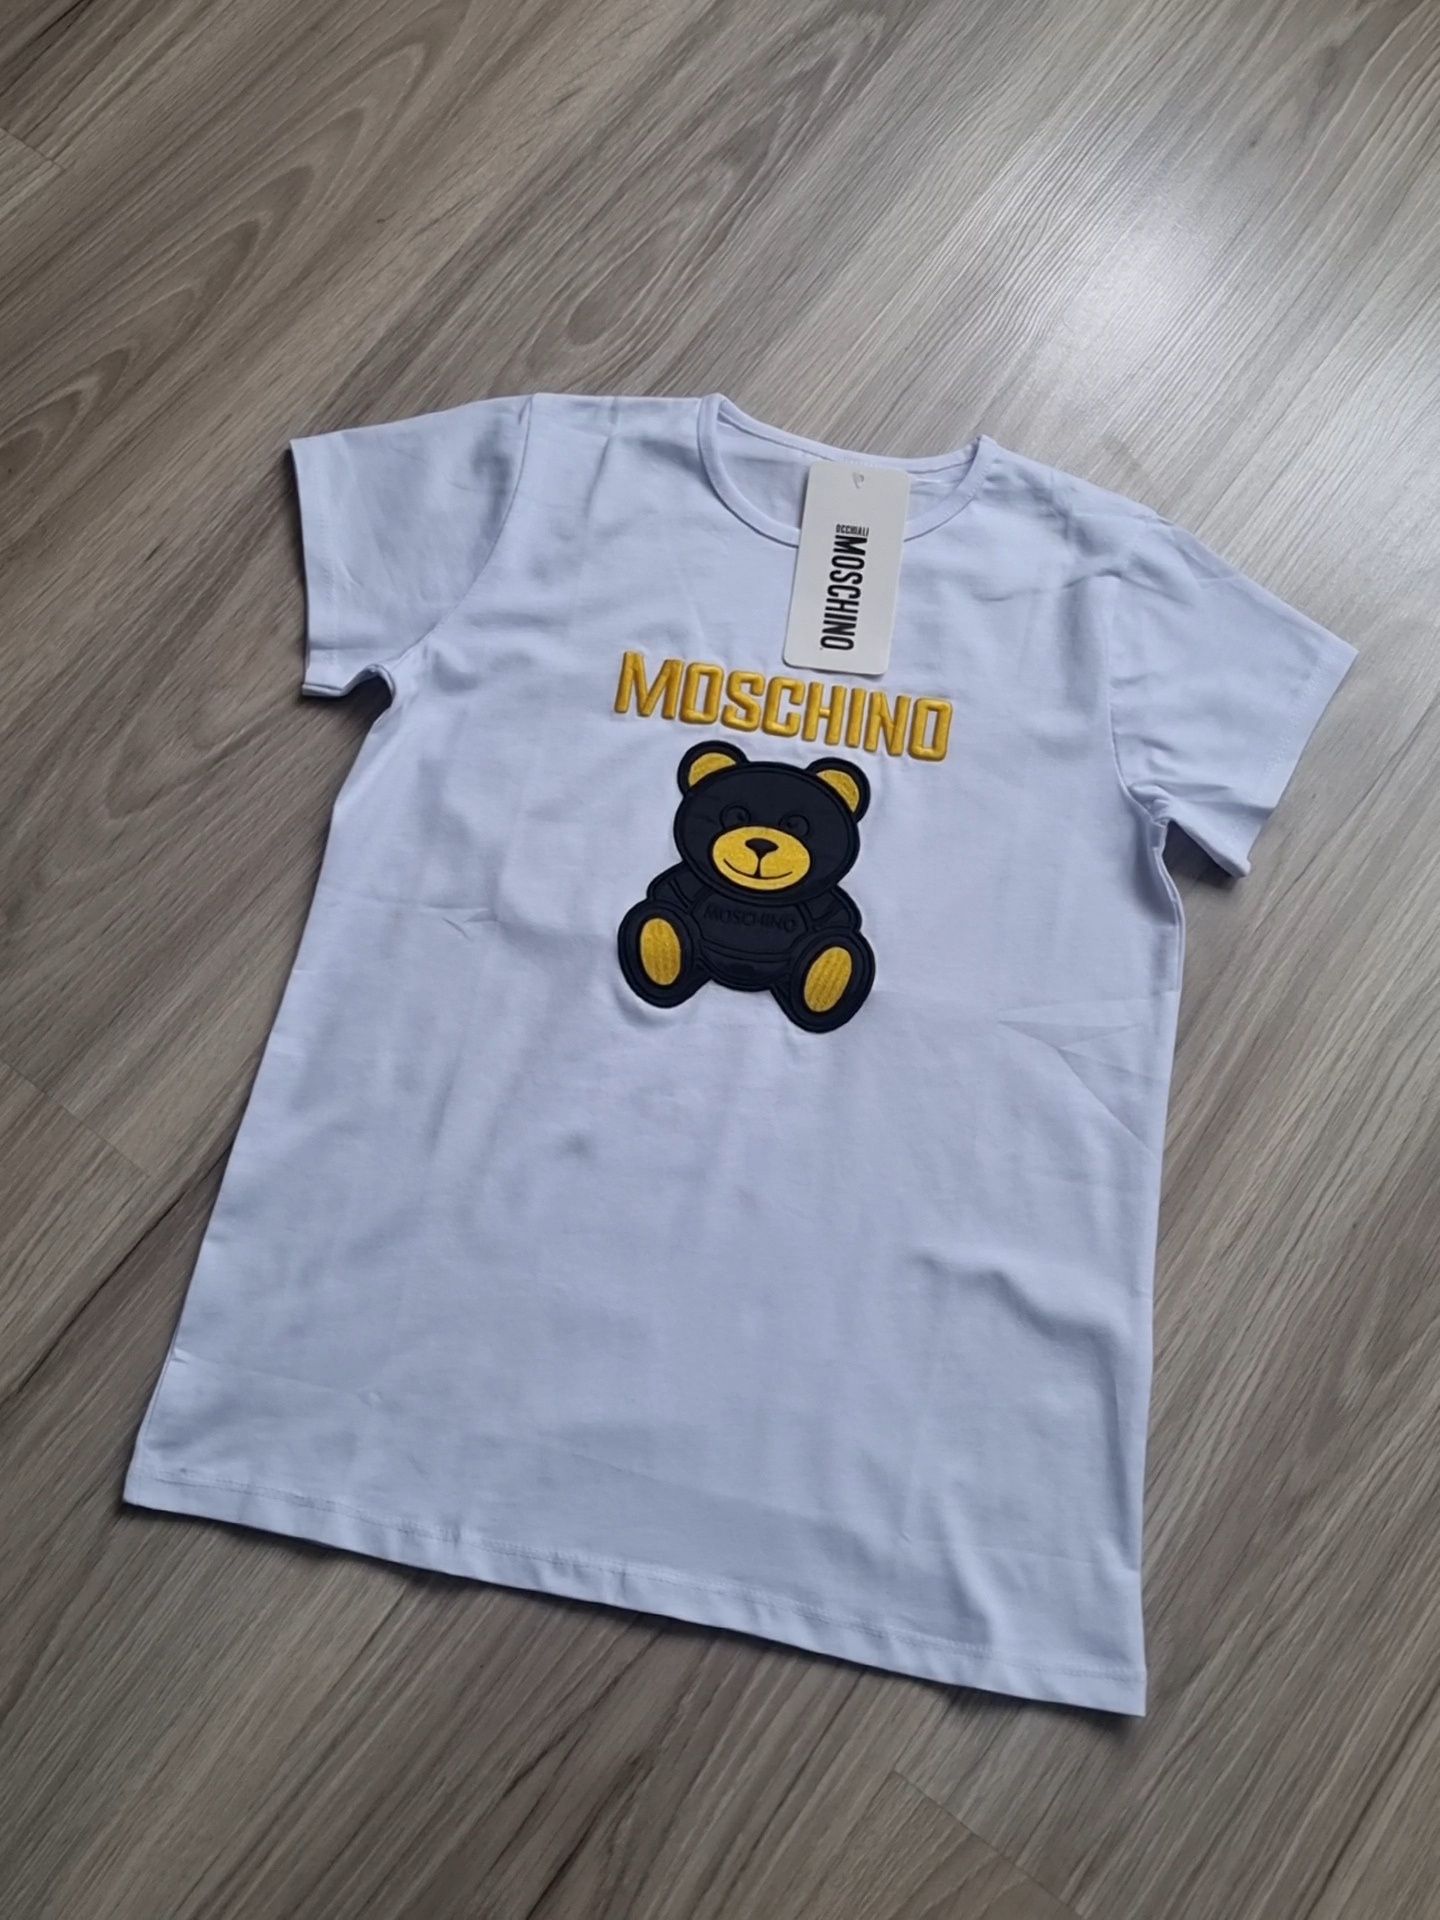 T-shirt/koszulka dziecięca biała Moschino rozmiar 164 - PROMOCJA!